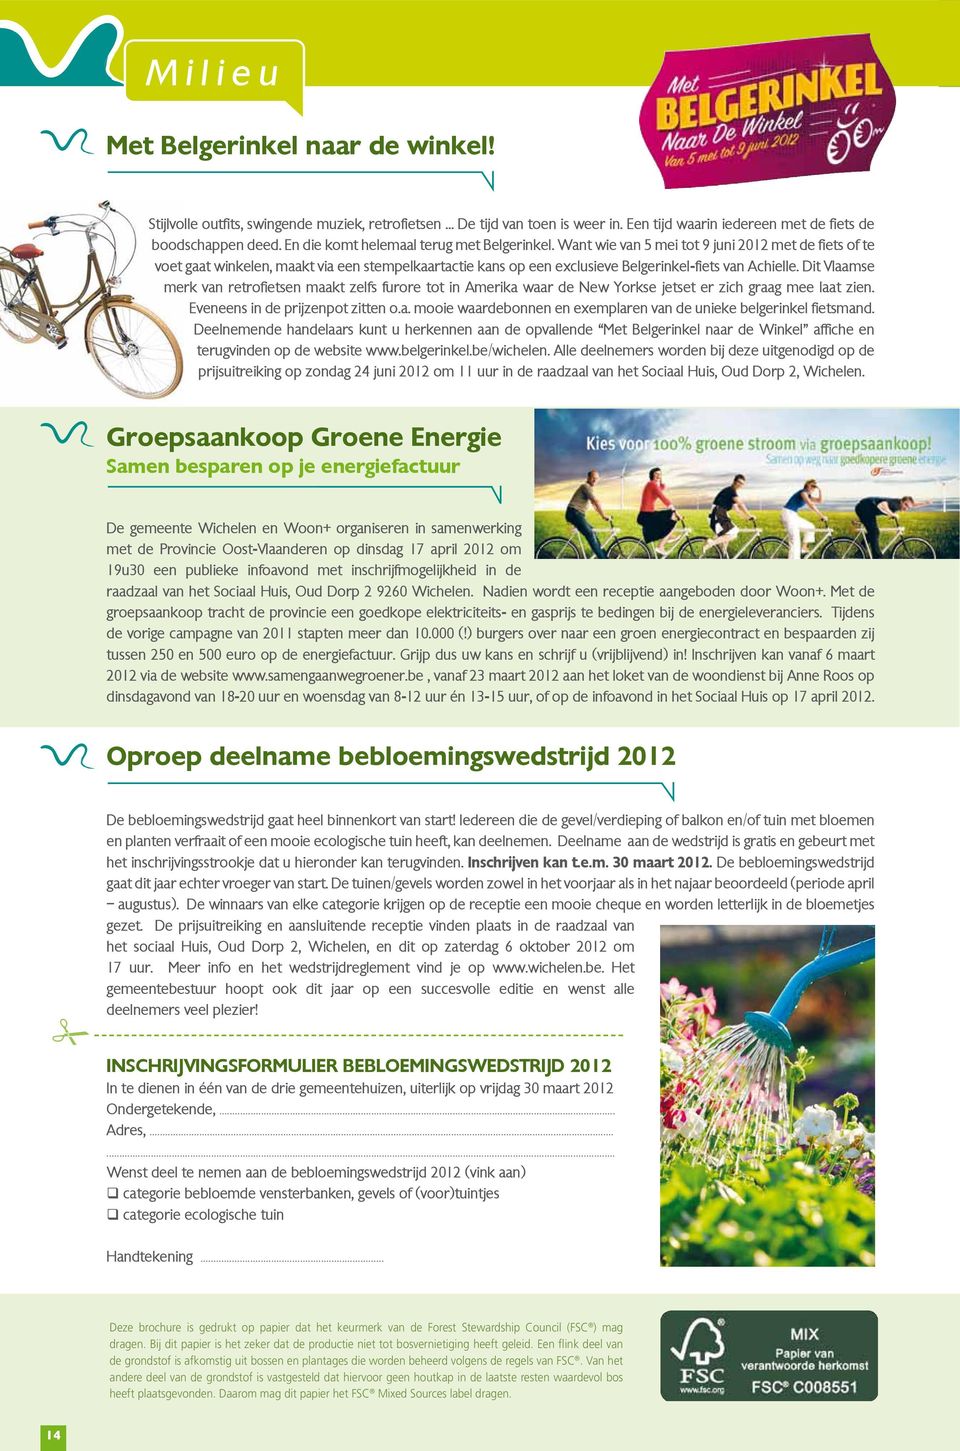 Want wie van 5 mei tot 9 juni 2012 met de fiets of te voet gaat winkelen, maakt via een stempelkaartactie kans op een exclusieve Belgerinkel-fiets van Achielle.